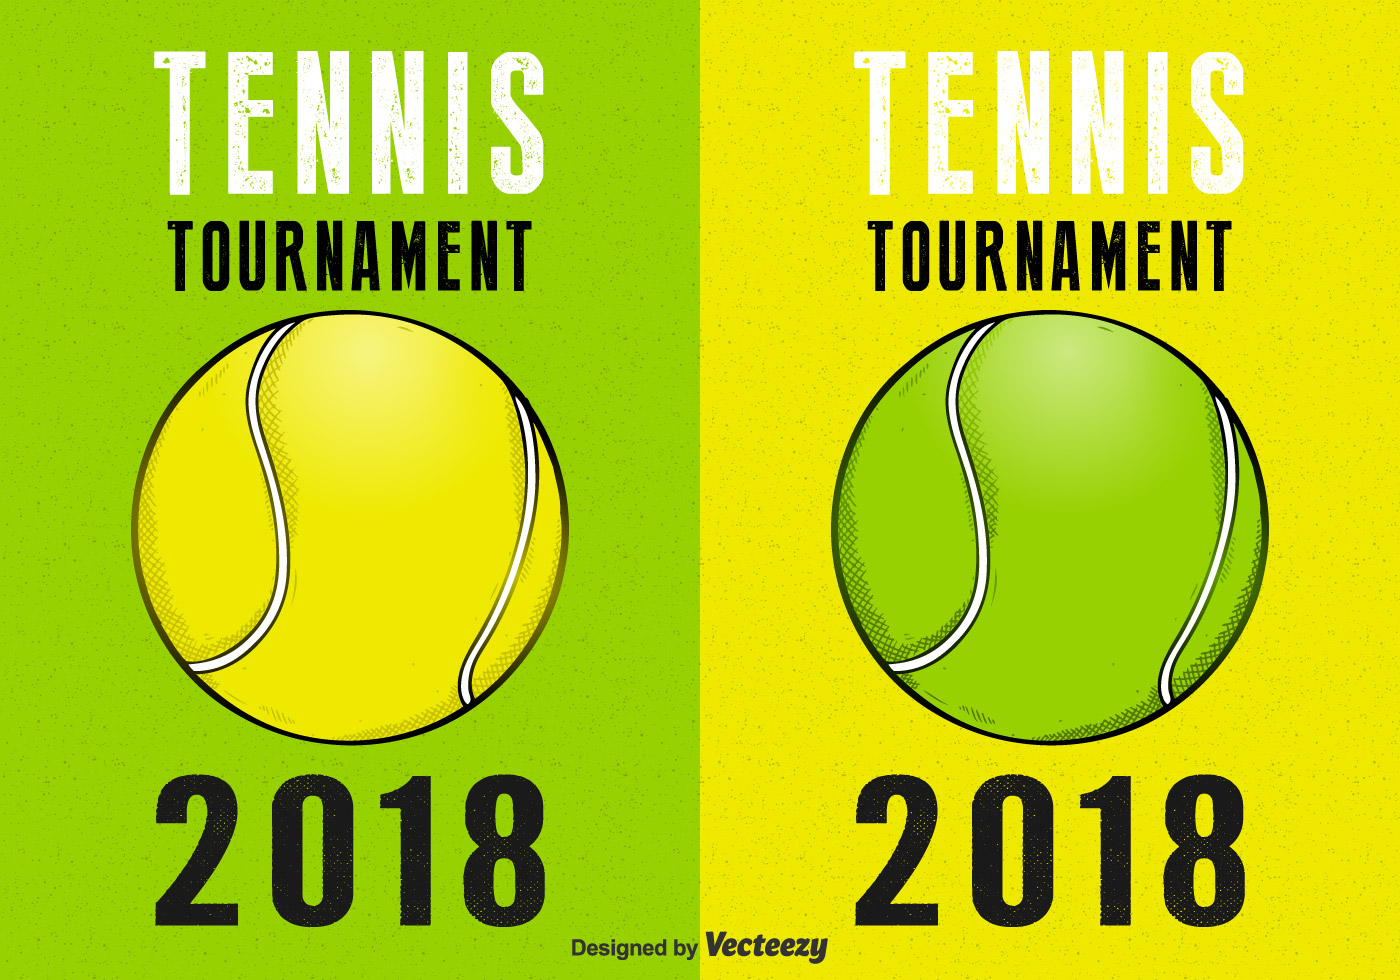 Poster download. Теннис Постер. Теннис турнир Постер вектор. Постеры для теннисных турниров. Теннис плакат рекламный.